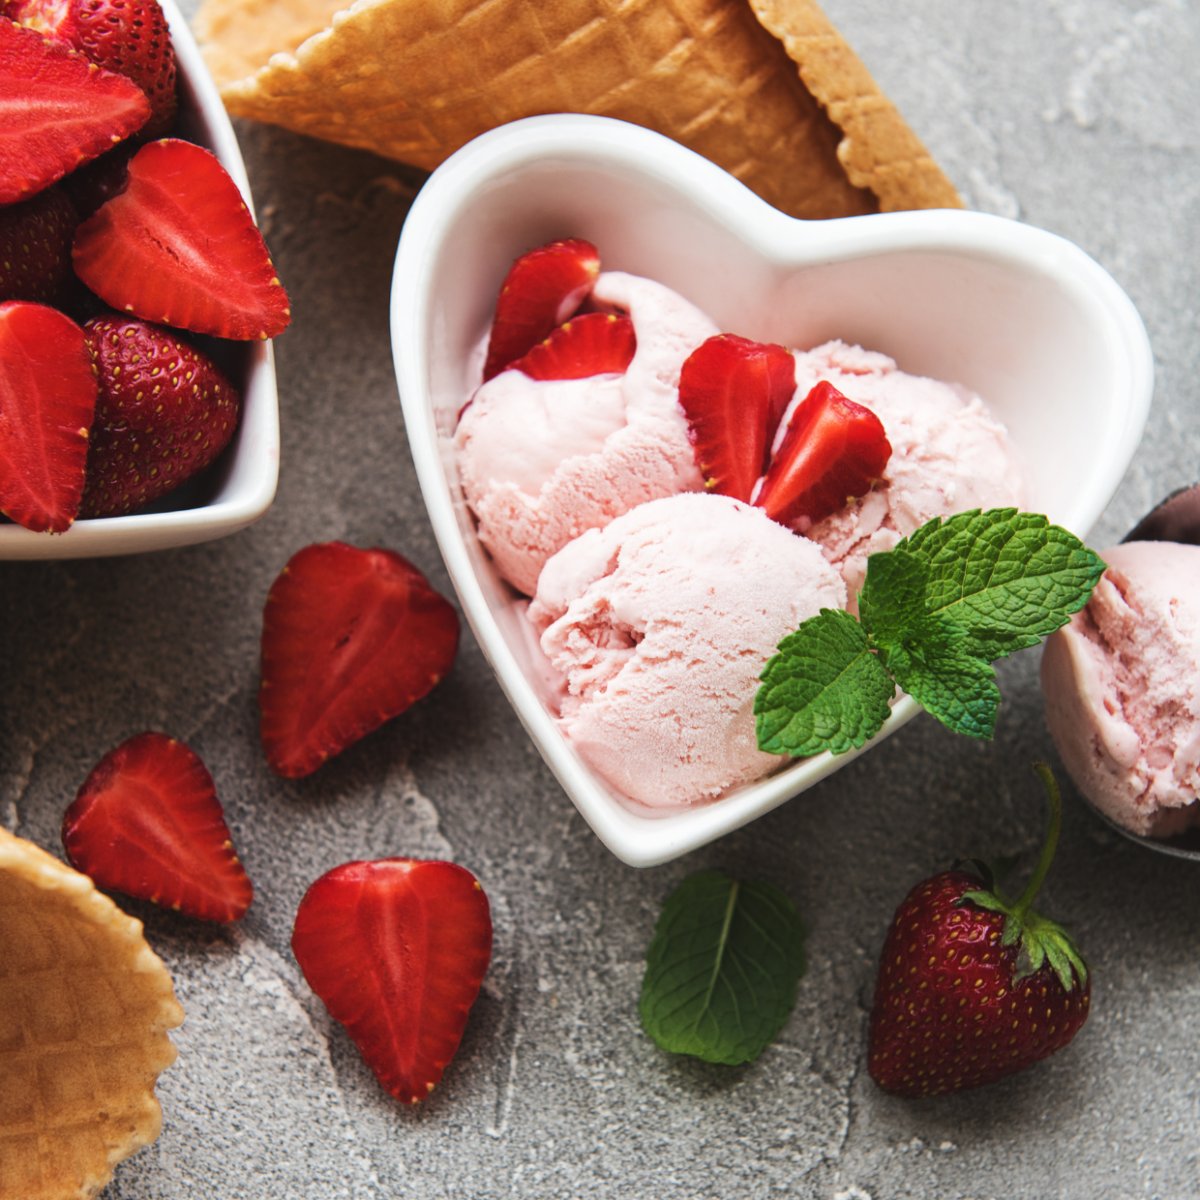 La meilleure recette de glace à la fraise